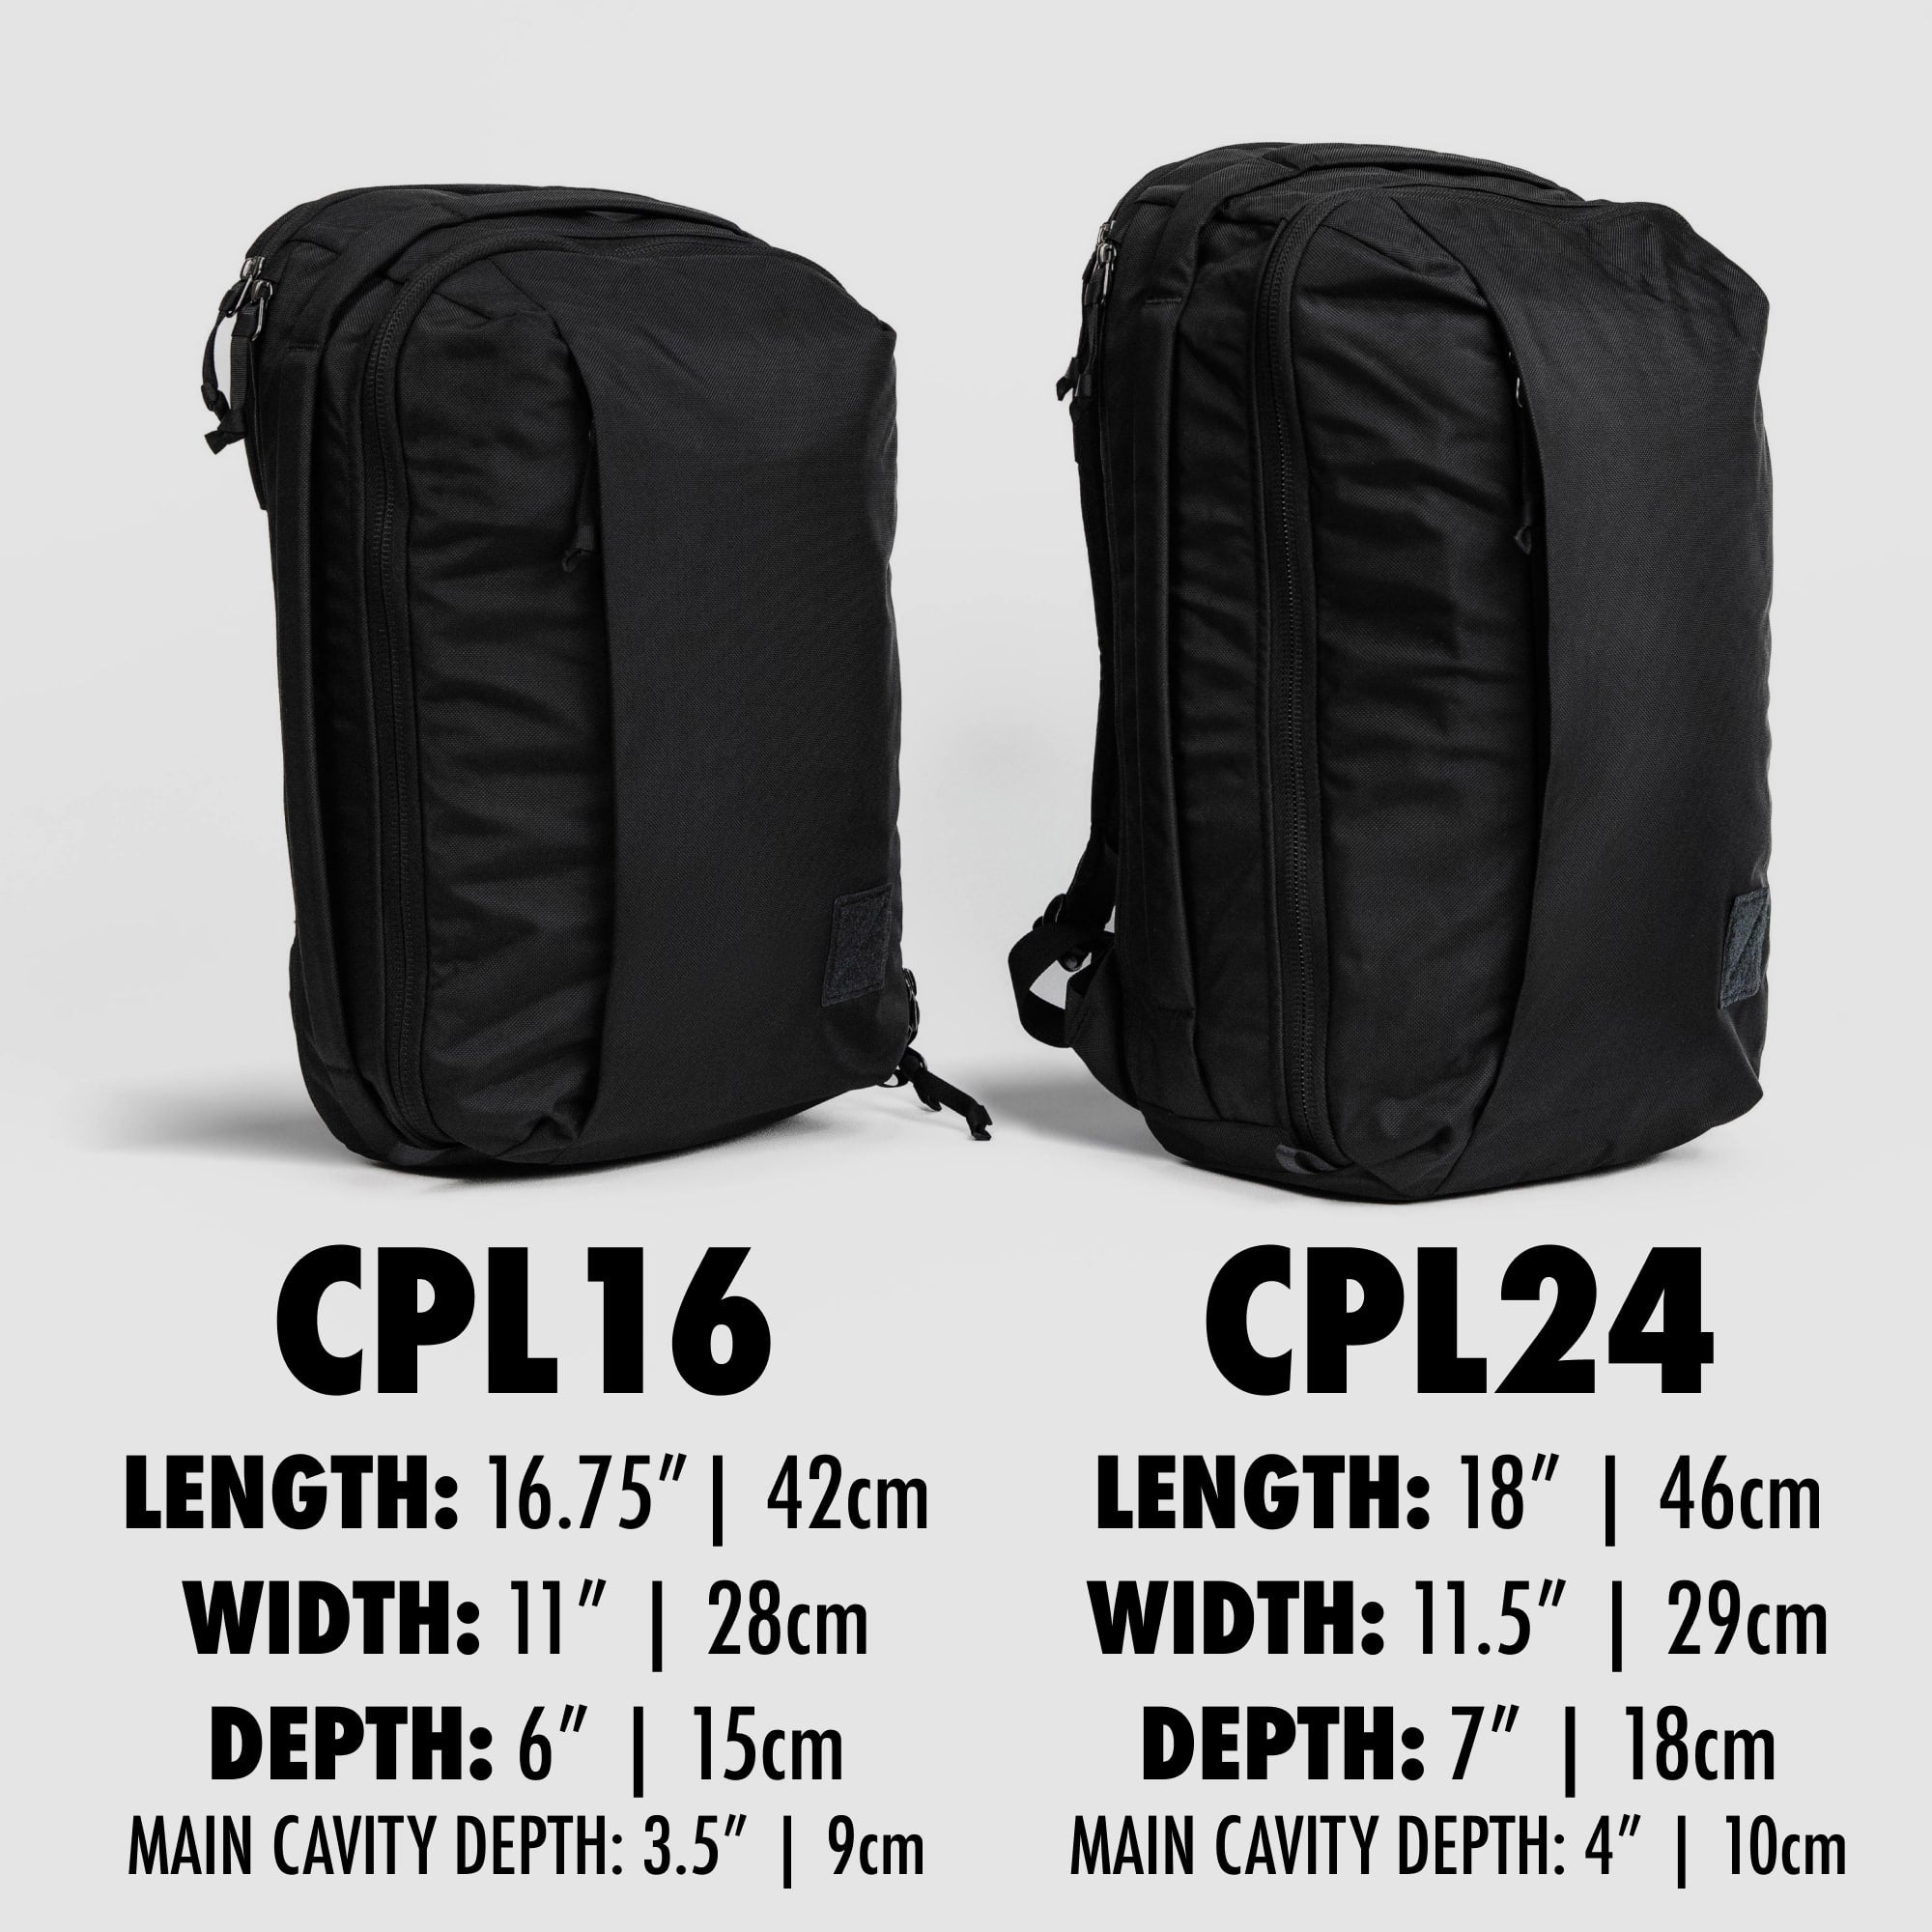 CPL16 vs. CPL24 size comparison with dimensions